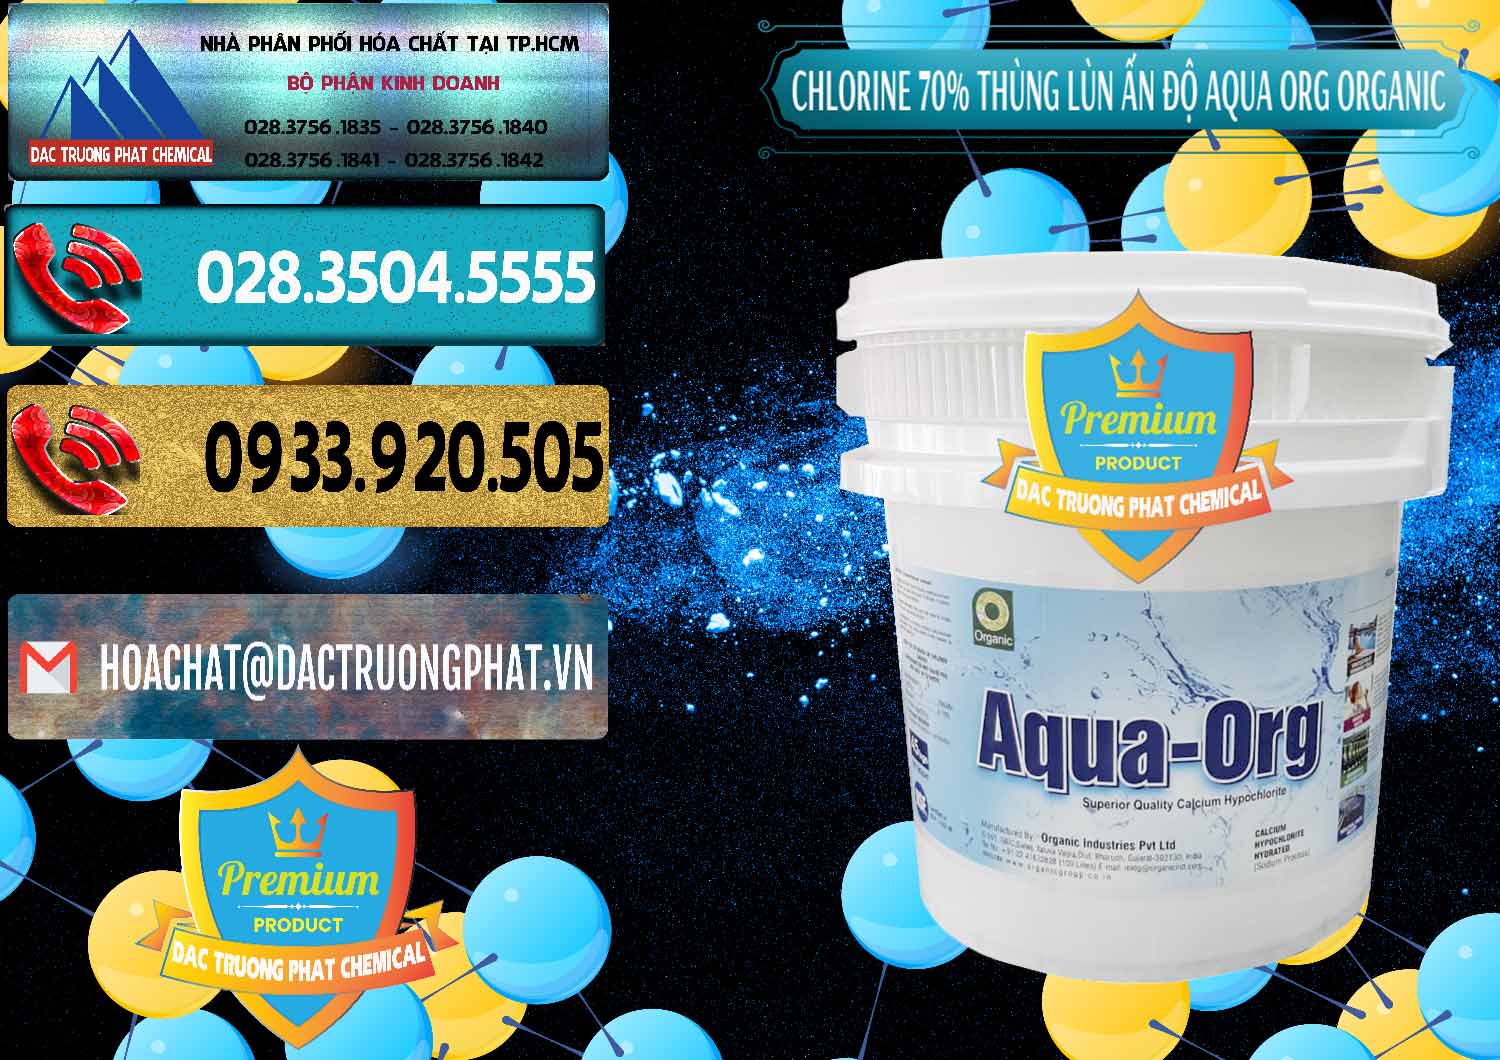 Đơn vị chuyên bán - cung ứng Chlorine – Clorin 70% Thùng Lùn Ấn Độ Aqua ORG Organic India - 0212 - Chuyên phân phối ( cung ứng ) hóa chất tại TP.HCM - hoachatdetnhuom.com